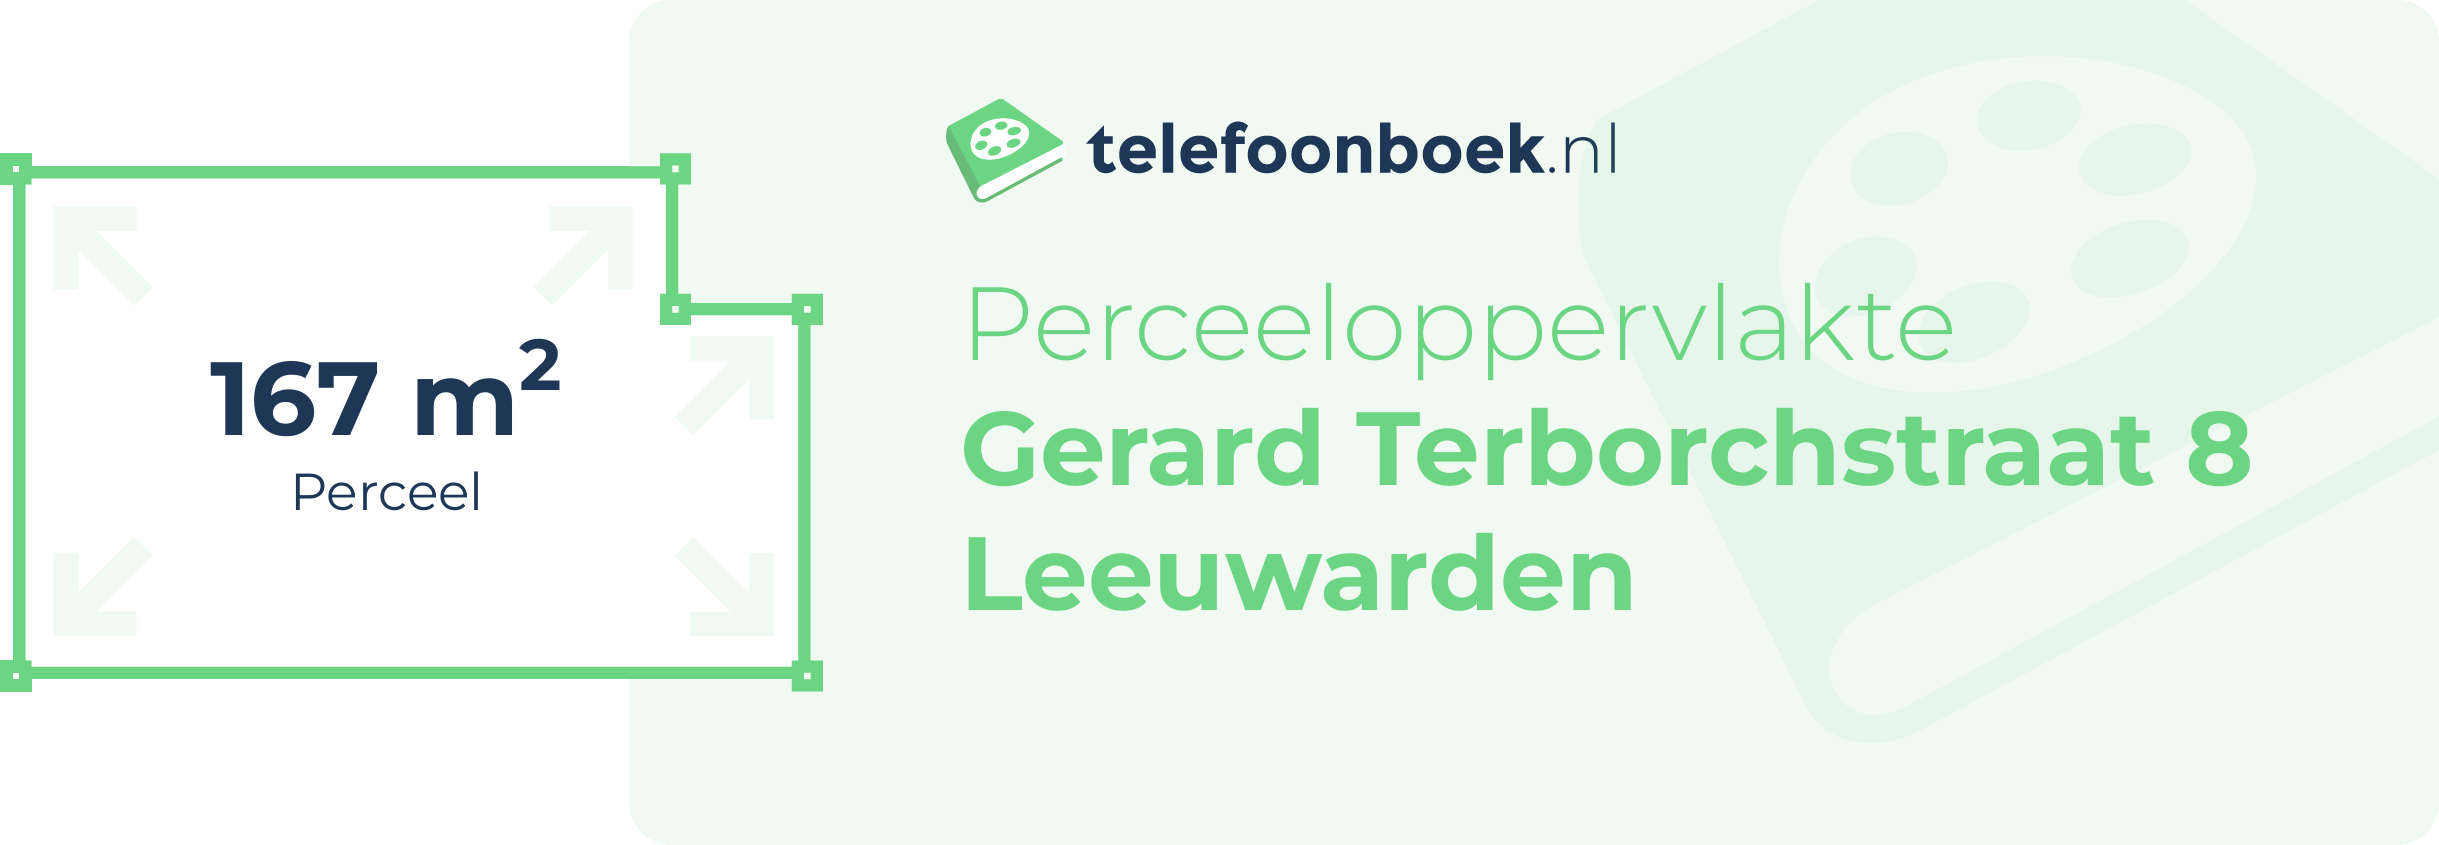 Perceeloppervlakte Gerard Terborchstraat 8 Leeuwarden